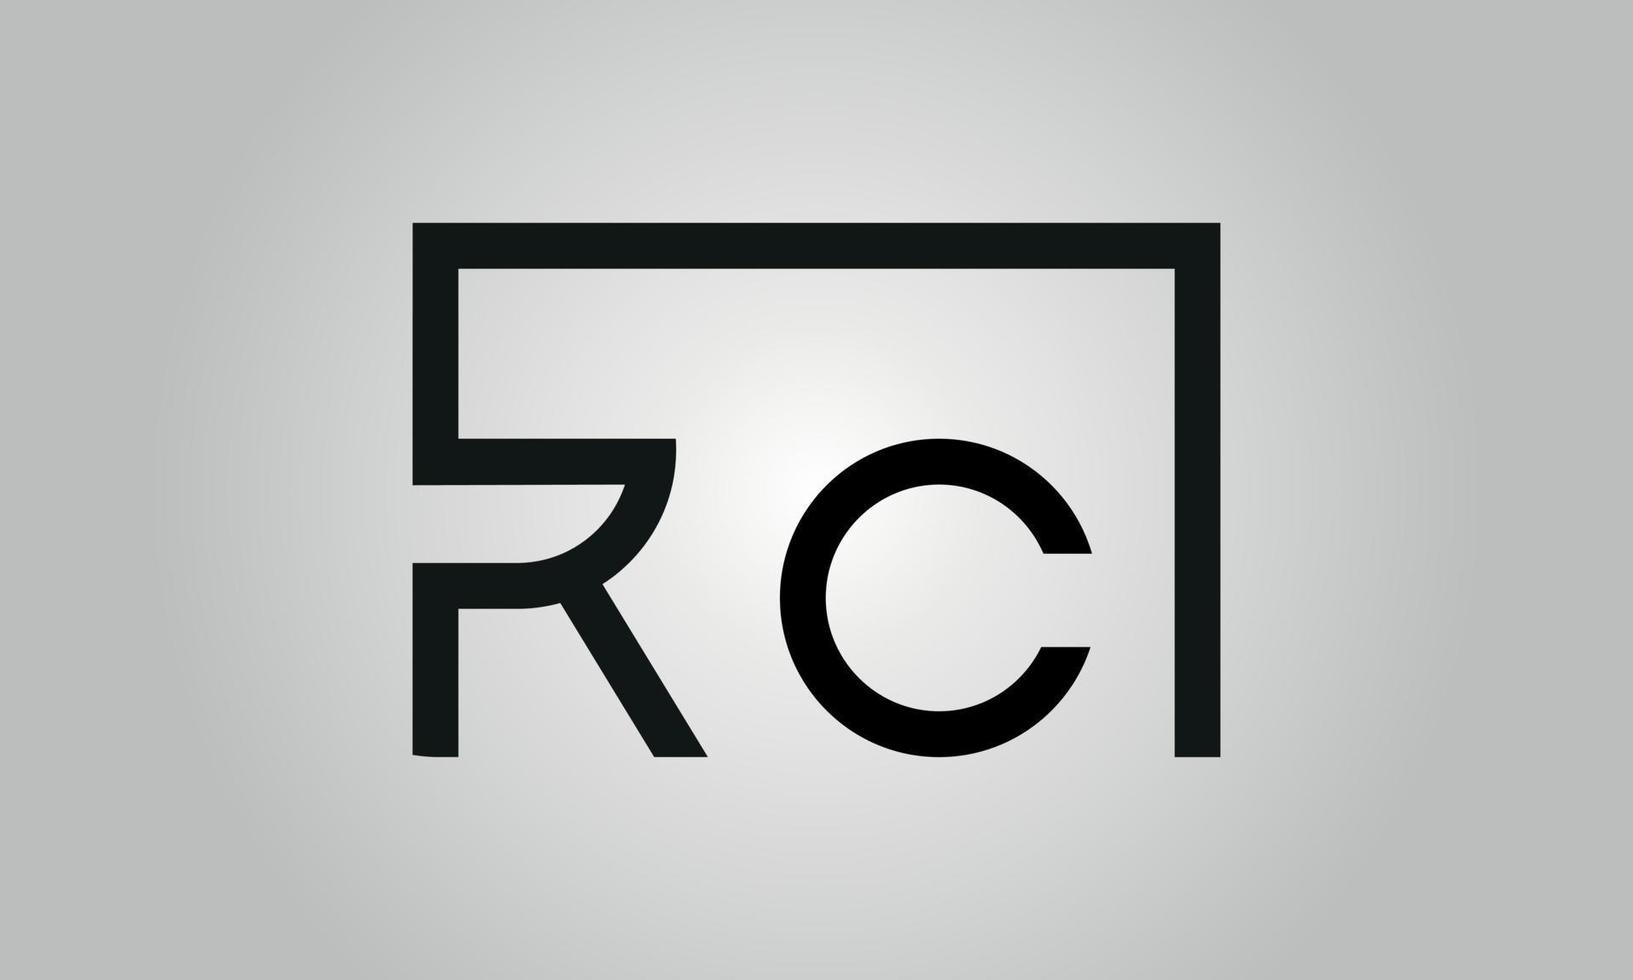 création de logo lettre rc. logo rc avec forme carrée dans le modèle vectoriel gratuit de couleurs noires.